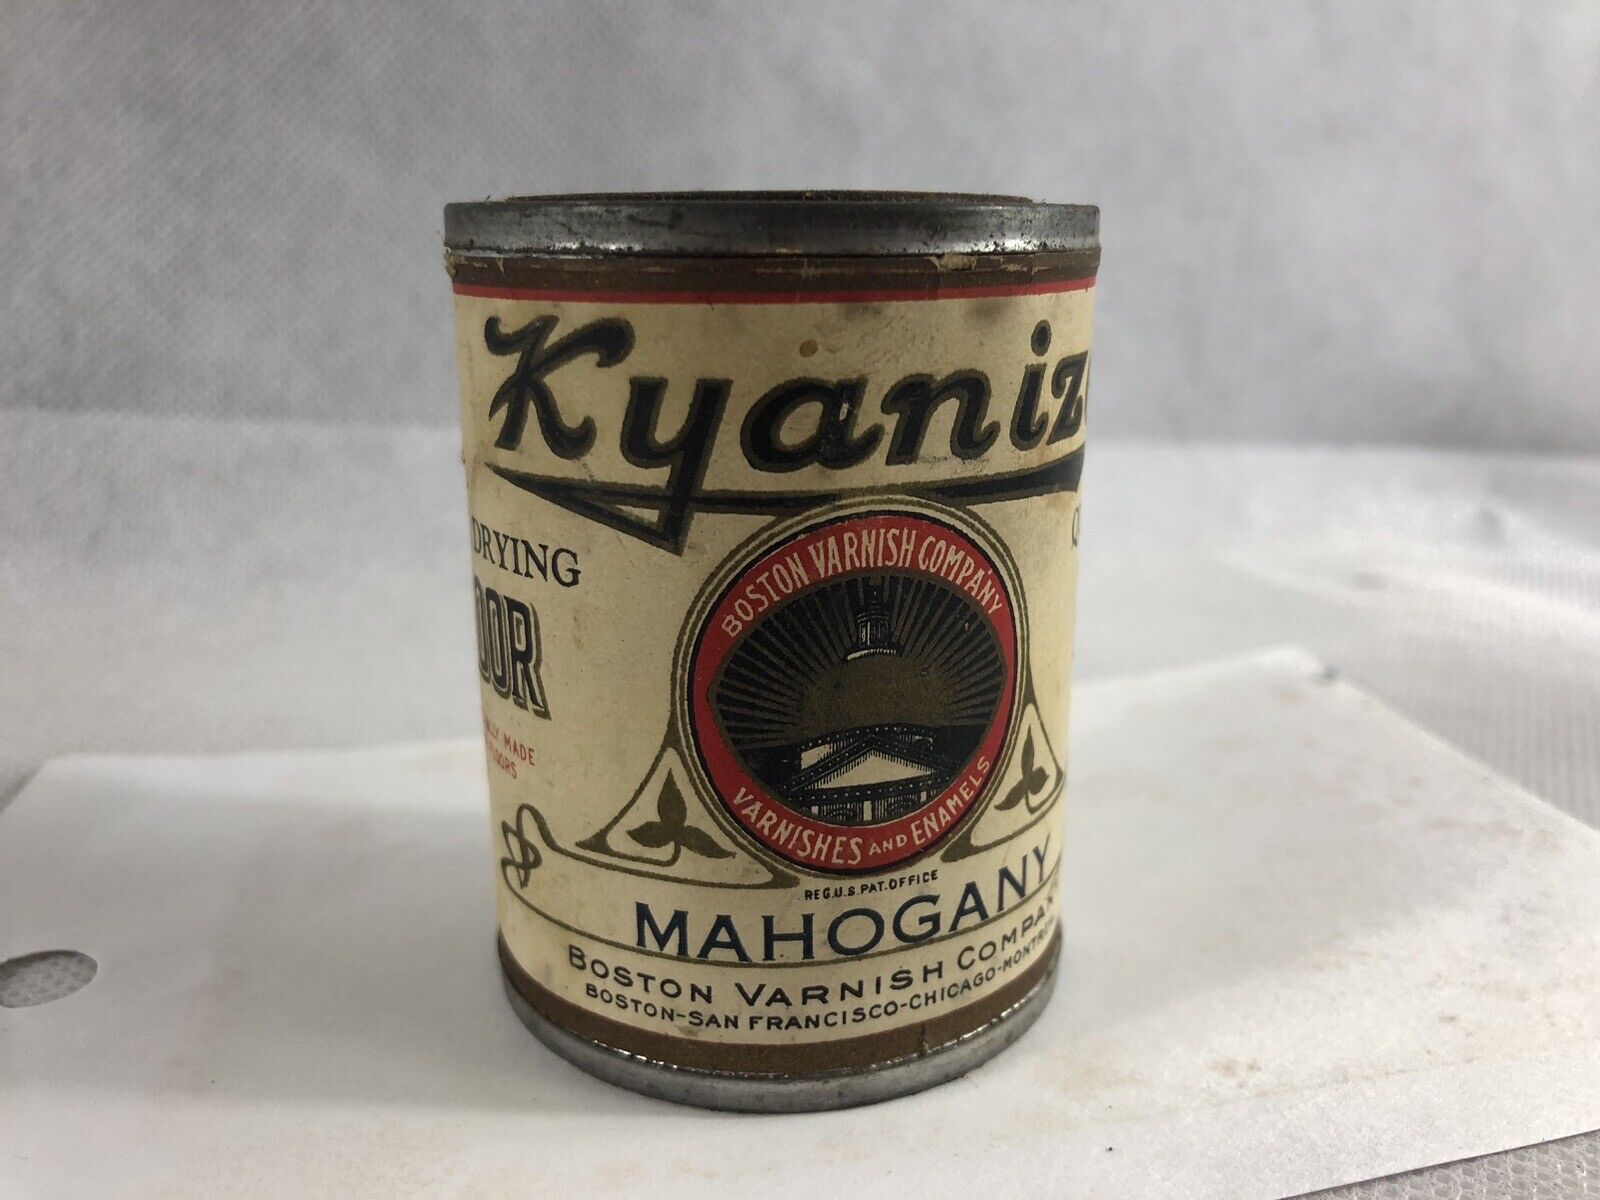 Vintage Kyanize Mahogany, Boston Varnish Company, 1/4 Pint Circa 1935